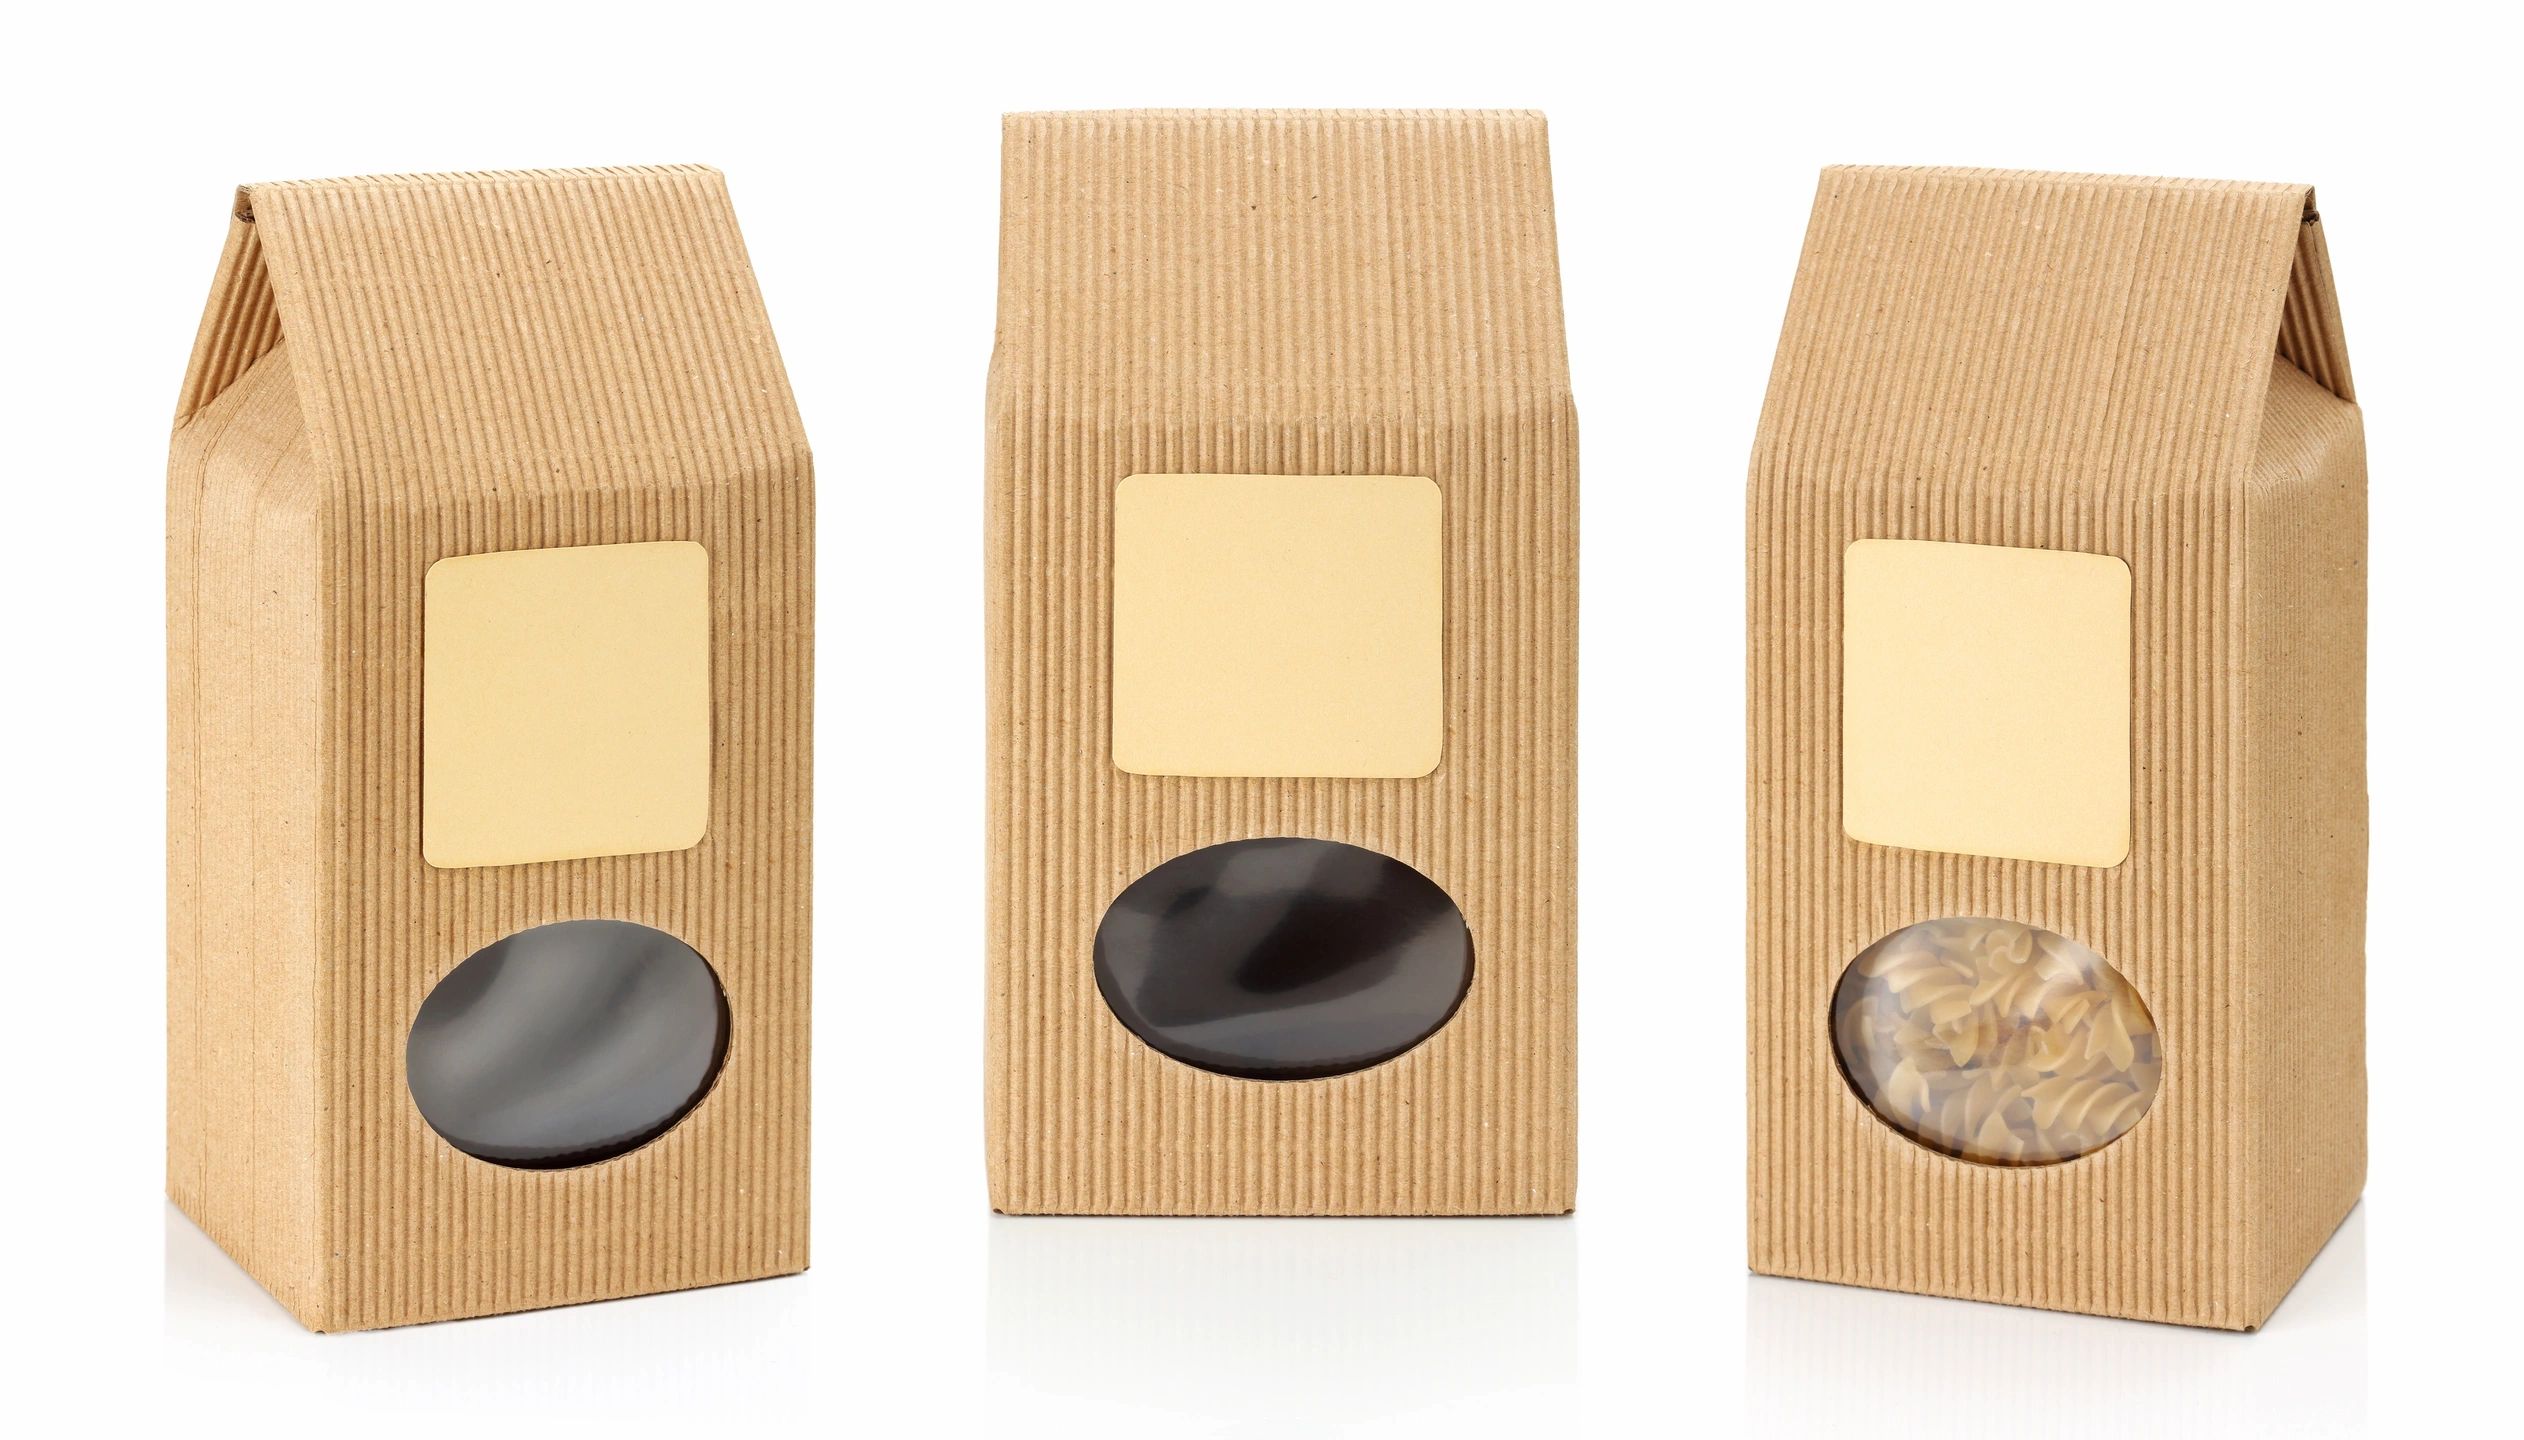 Package collection. Картонная коробка для чая. Картонные коробочки для чая. Упаковка для чая бумажная с окошком. Картонная упаковка для сыпучих продуктов.